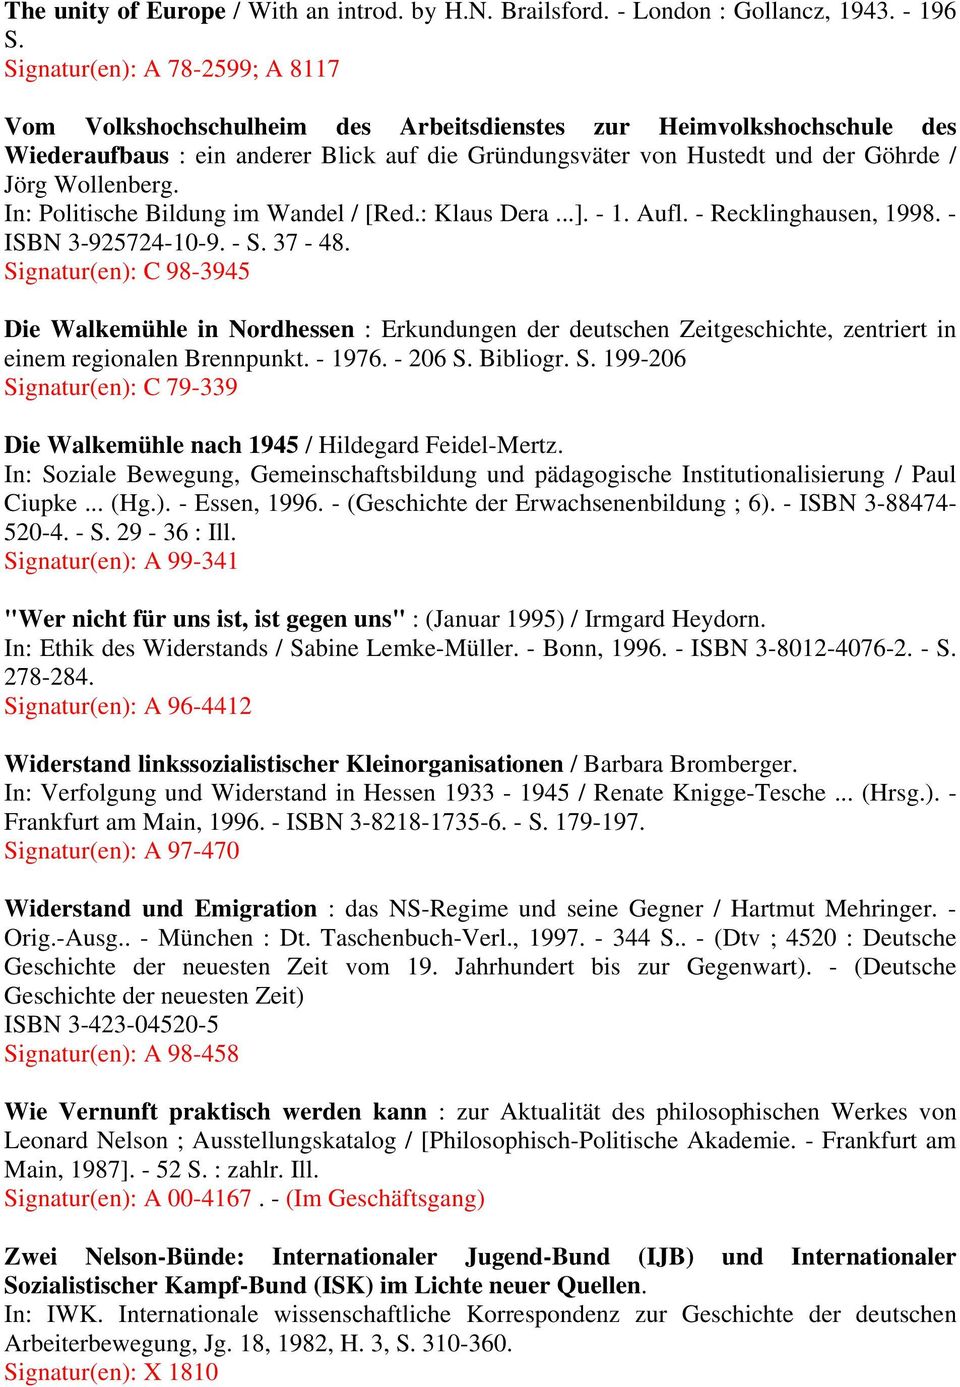 Wollenberg. In: Politische Bildung im Wandel / [Red.: Klaus Dera...]. - 1. Aufl. - Recklinghausen, 1998. - ISBN 3-925724-10-9. - S. 37-48.